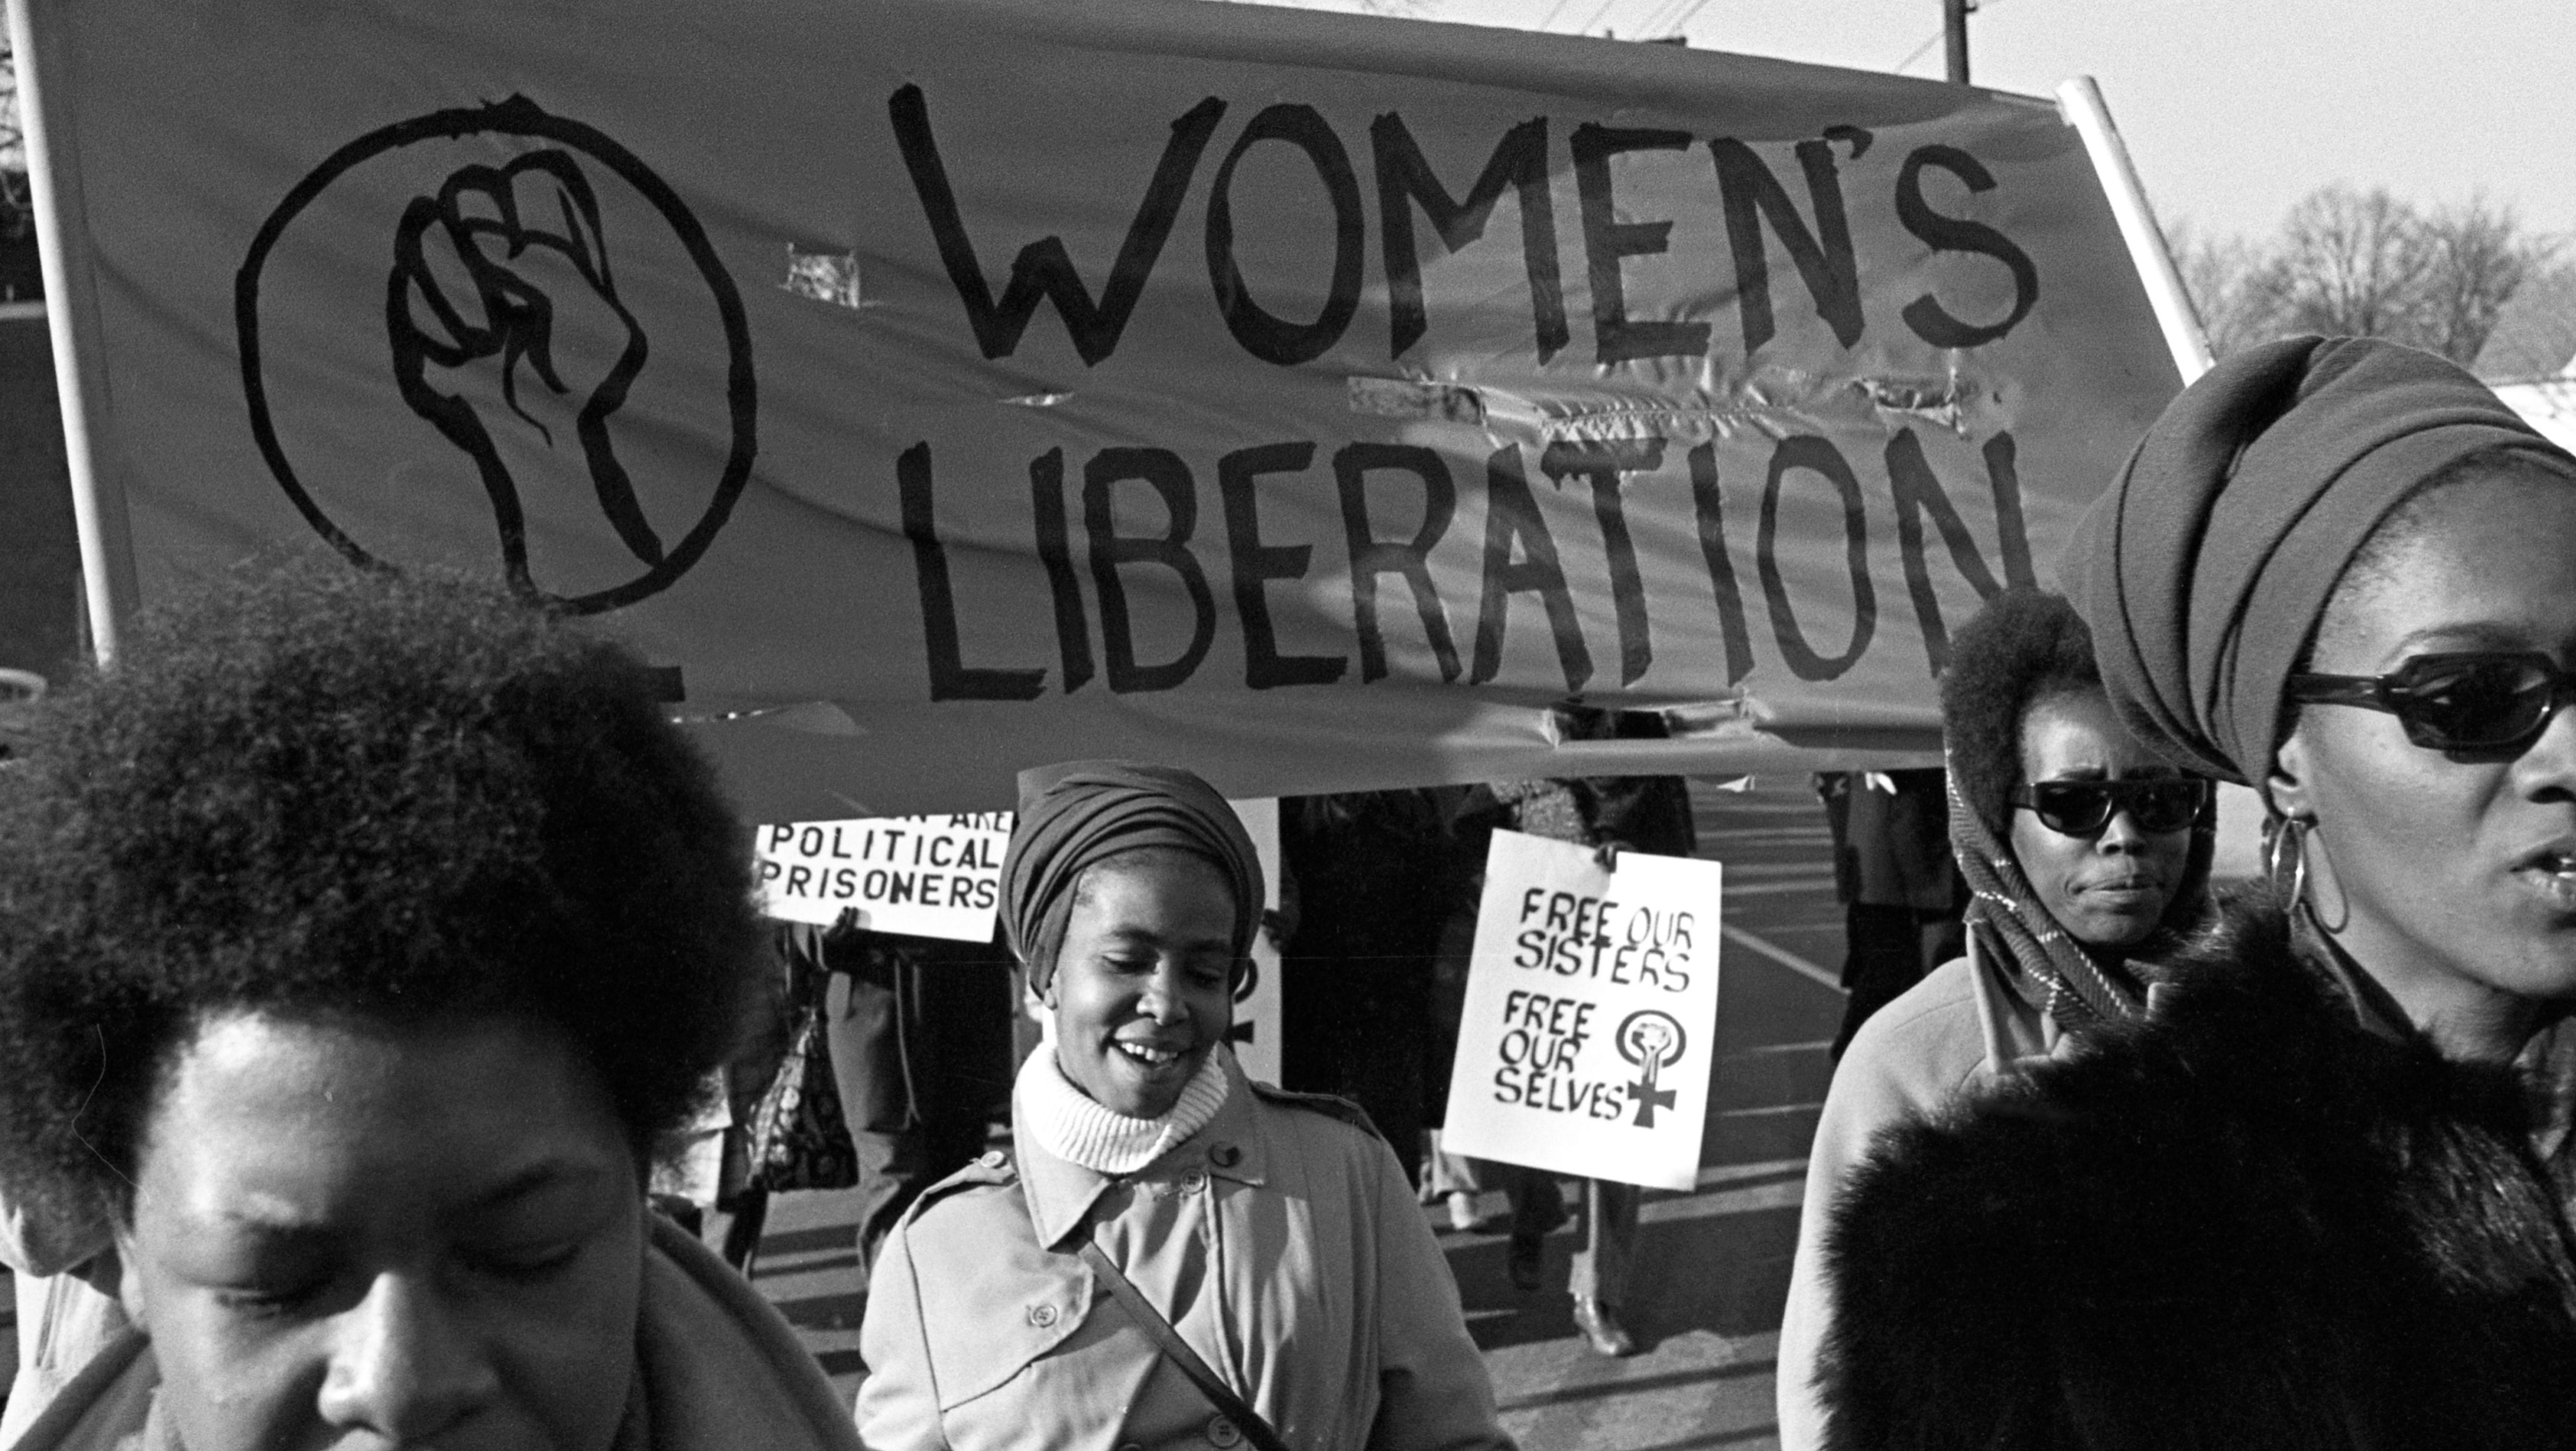 Muheres marcham em apoio ao partido Black Panthers (Panteras Negras), em New Haven, 1969